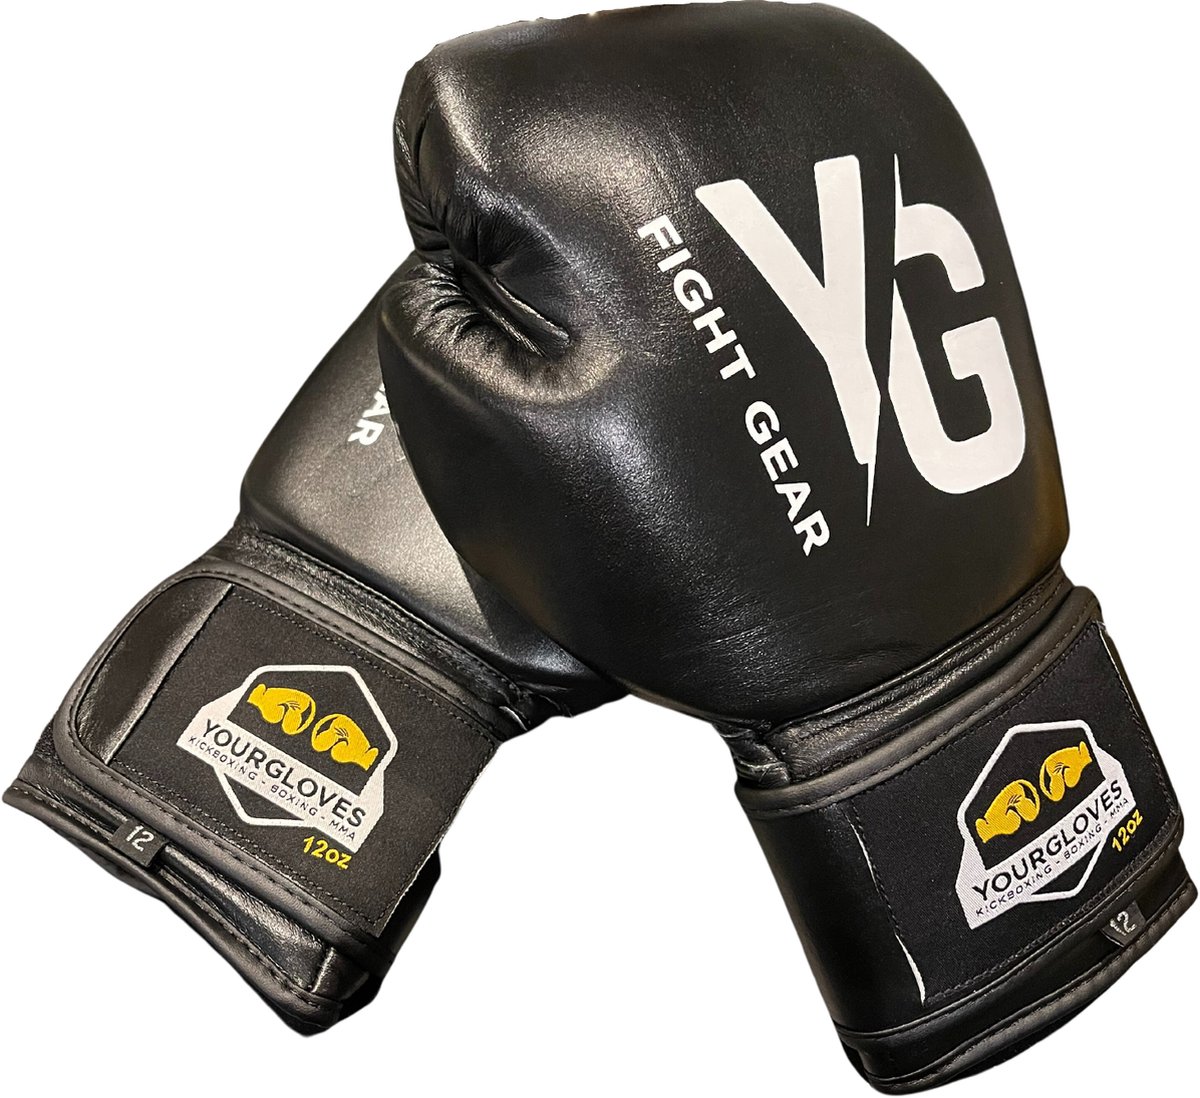 (Kick)bokshandschoenen - YourGloves - 16 OZ - Dames - Heren - Vechtsport - Zwart